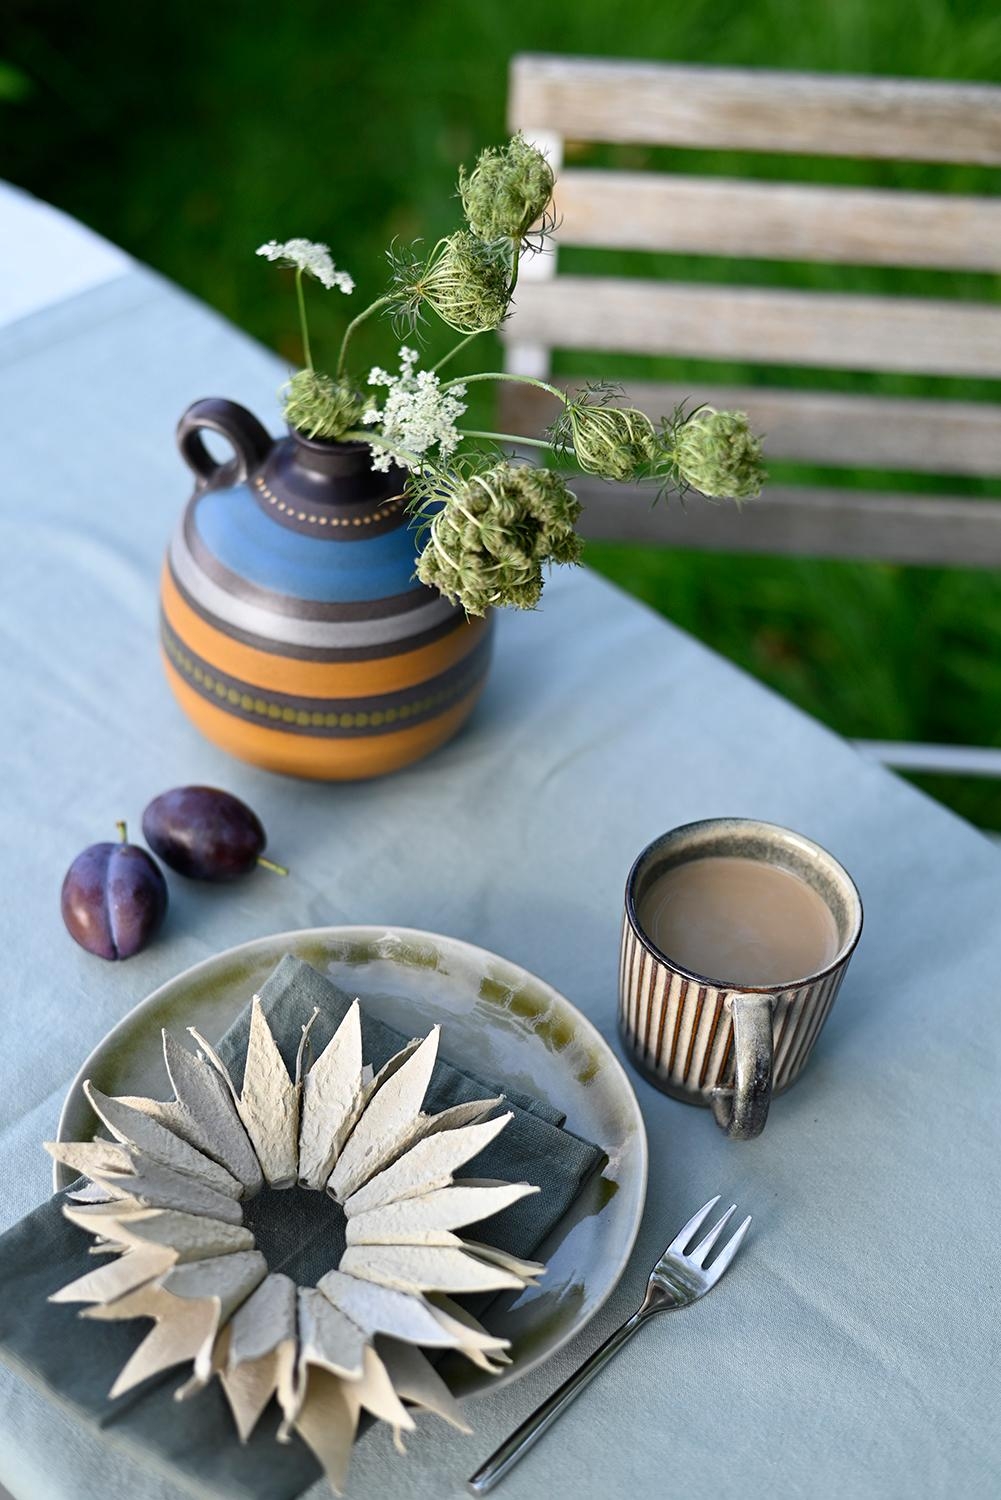 #Herbst Kaffeekränzchen im #Garten ...

#diy #Sonnenblume aus #Eierkarton plus #Keramik aus Dänemark

#Tischdeko